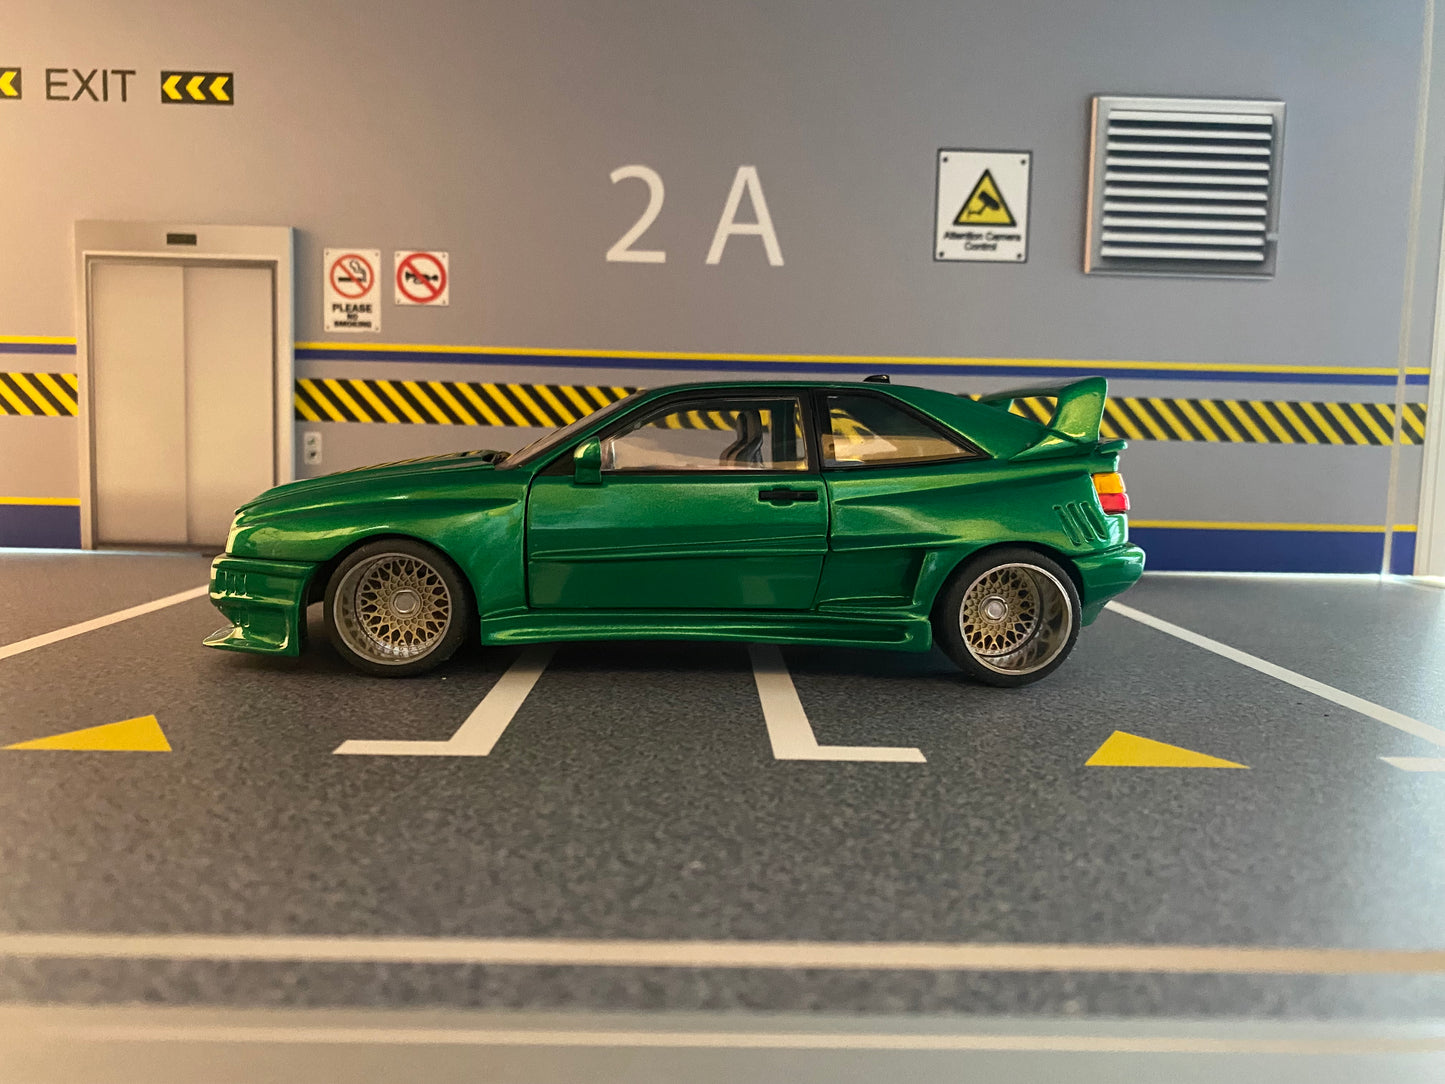 VW Corrado VR6 Rieger Breitbau mit Alufelgen "Candy Green" Tuning Umbau 1:18